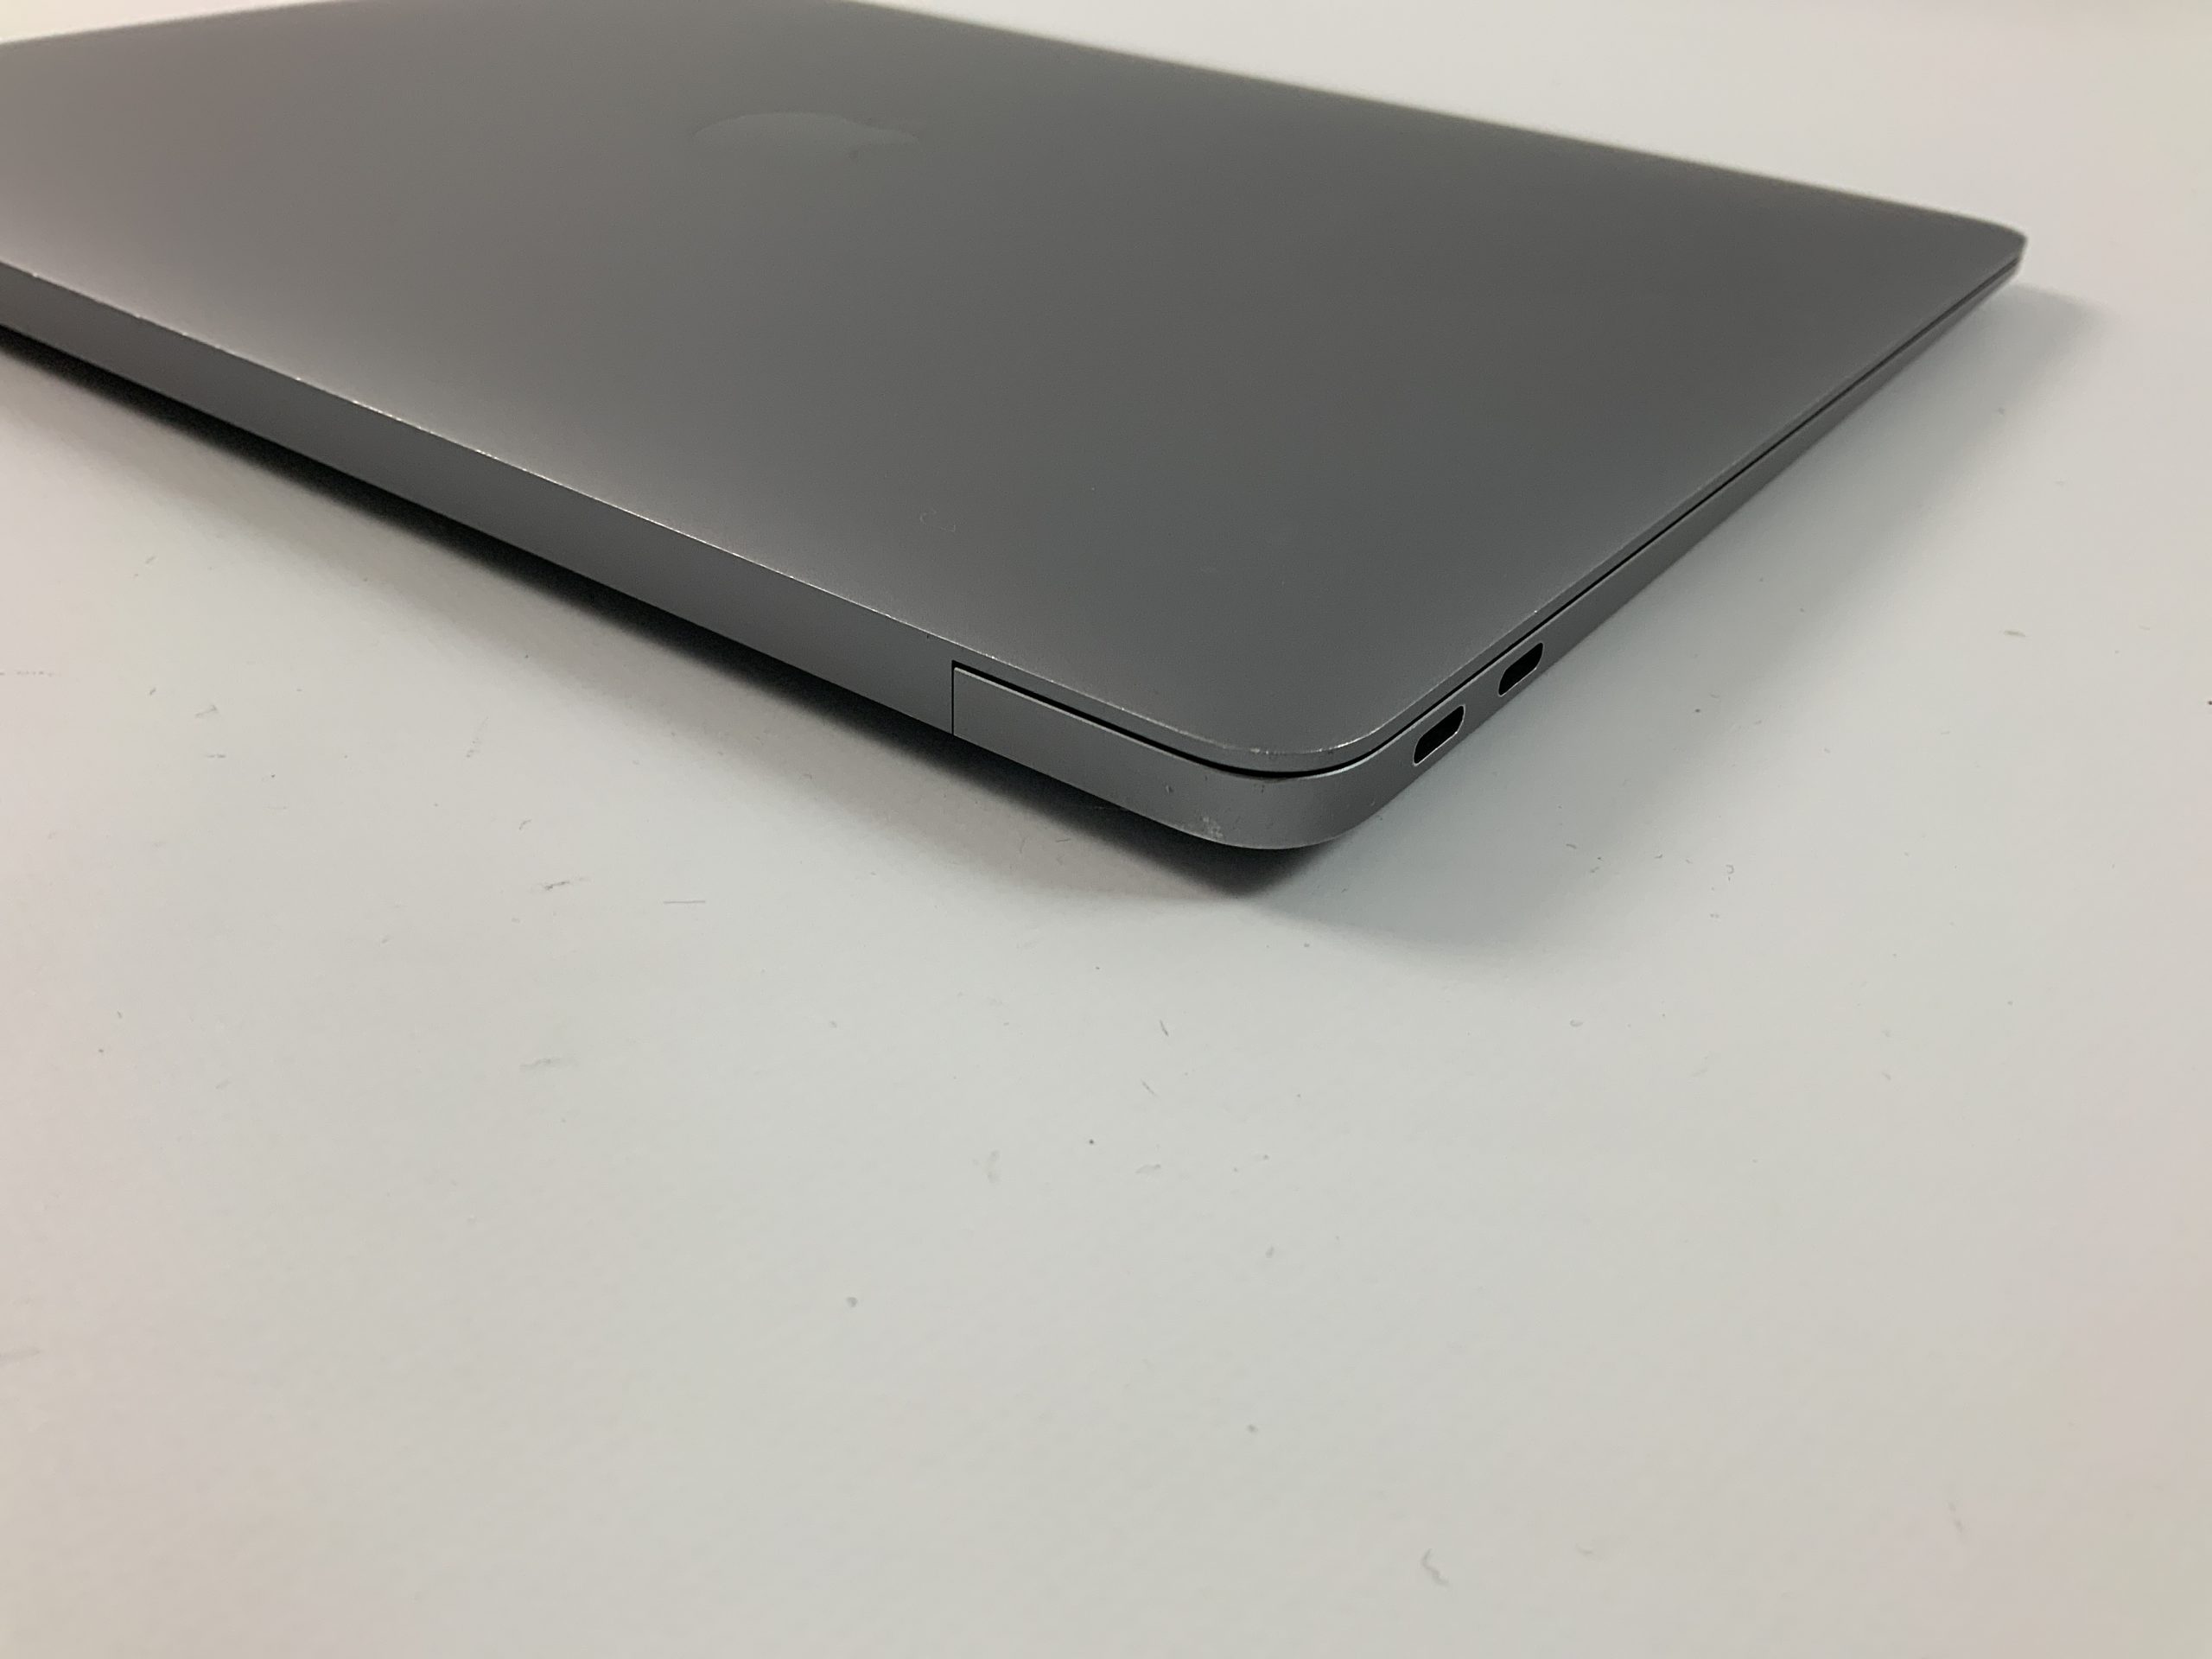 MacBook Air 13" Mid 2019 (Intel Core i5 1.6 GHz 16 GB RAM 128 GB SSD), Space Gray, Intel Core i5 1.6 GHz, 16 GB RAM, 128 GB SSD, imagen 5